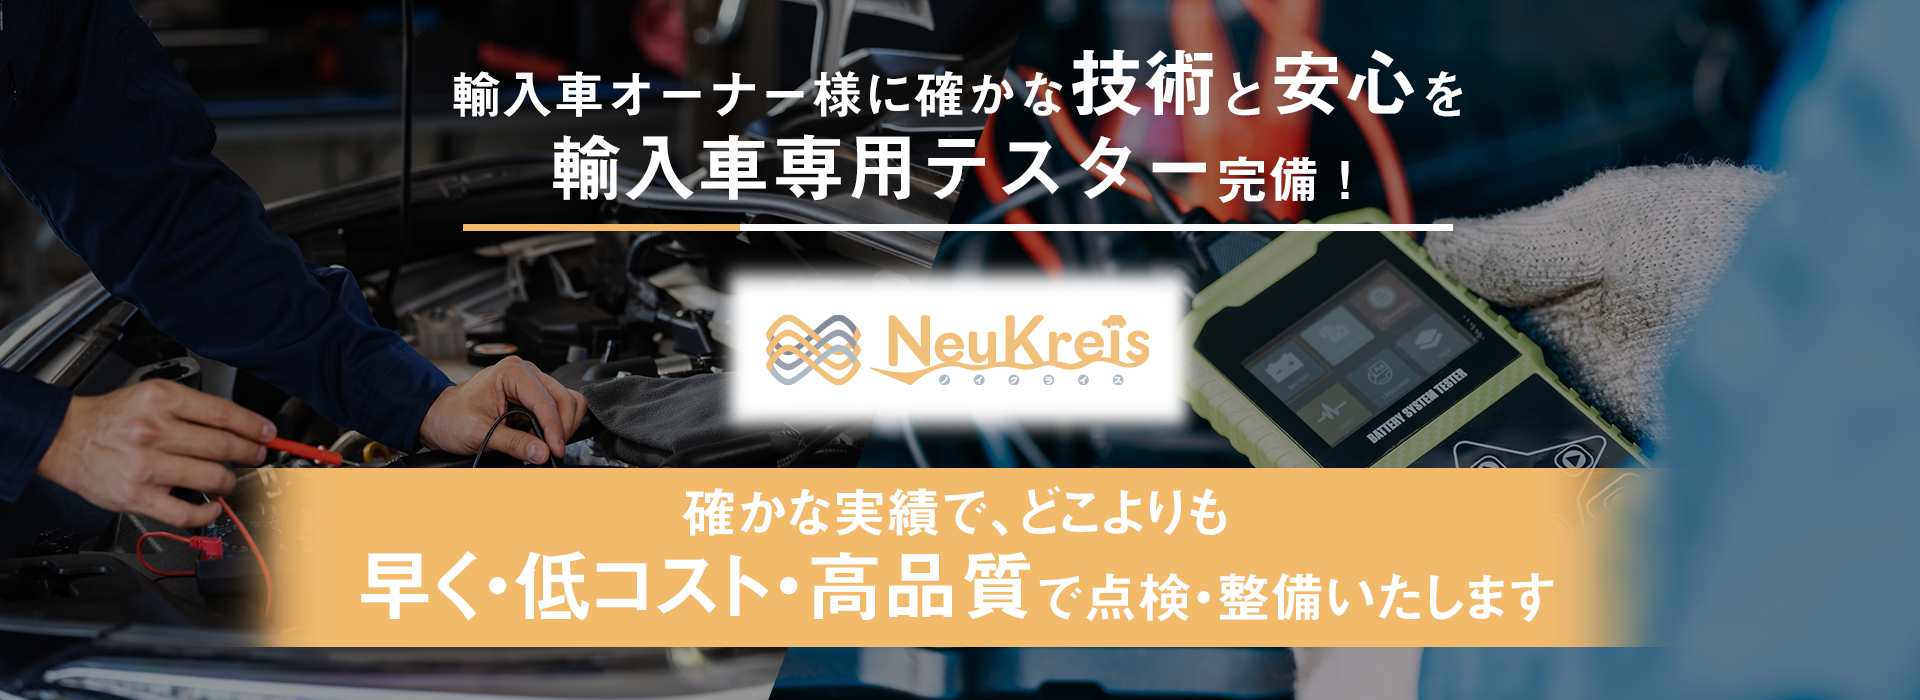 輸入車オーナー様に確かな技術と安心を 輸入車専用テスターを完備 NeuKreis ノイクライス 早く・低コスト・高品質